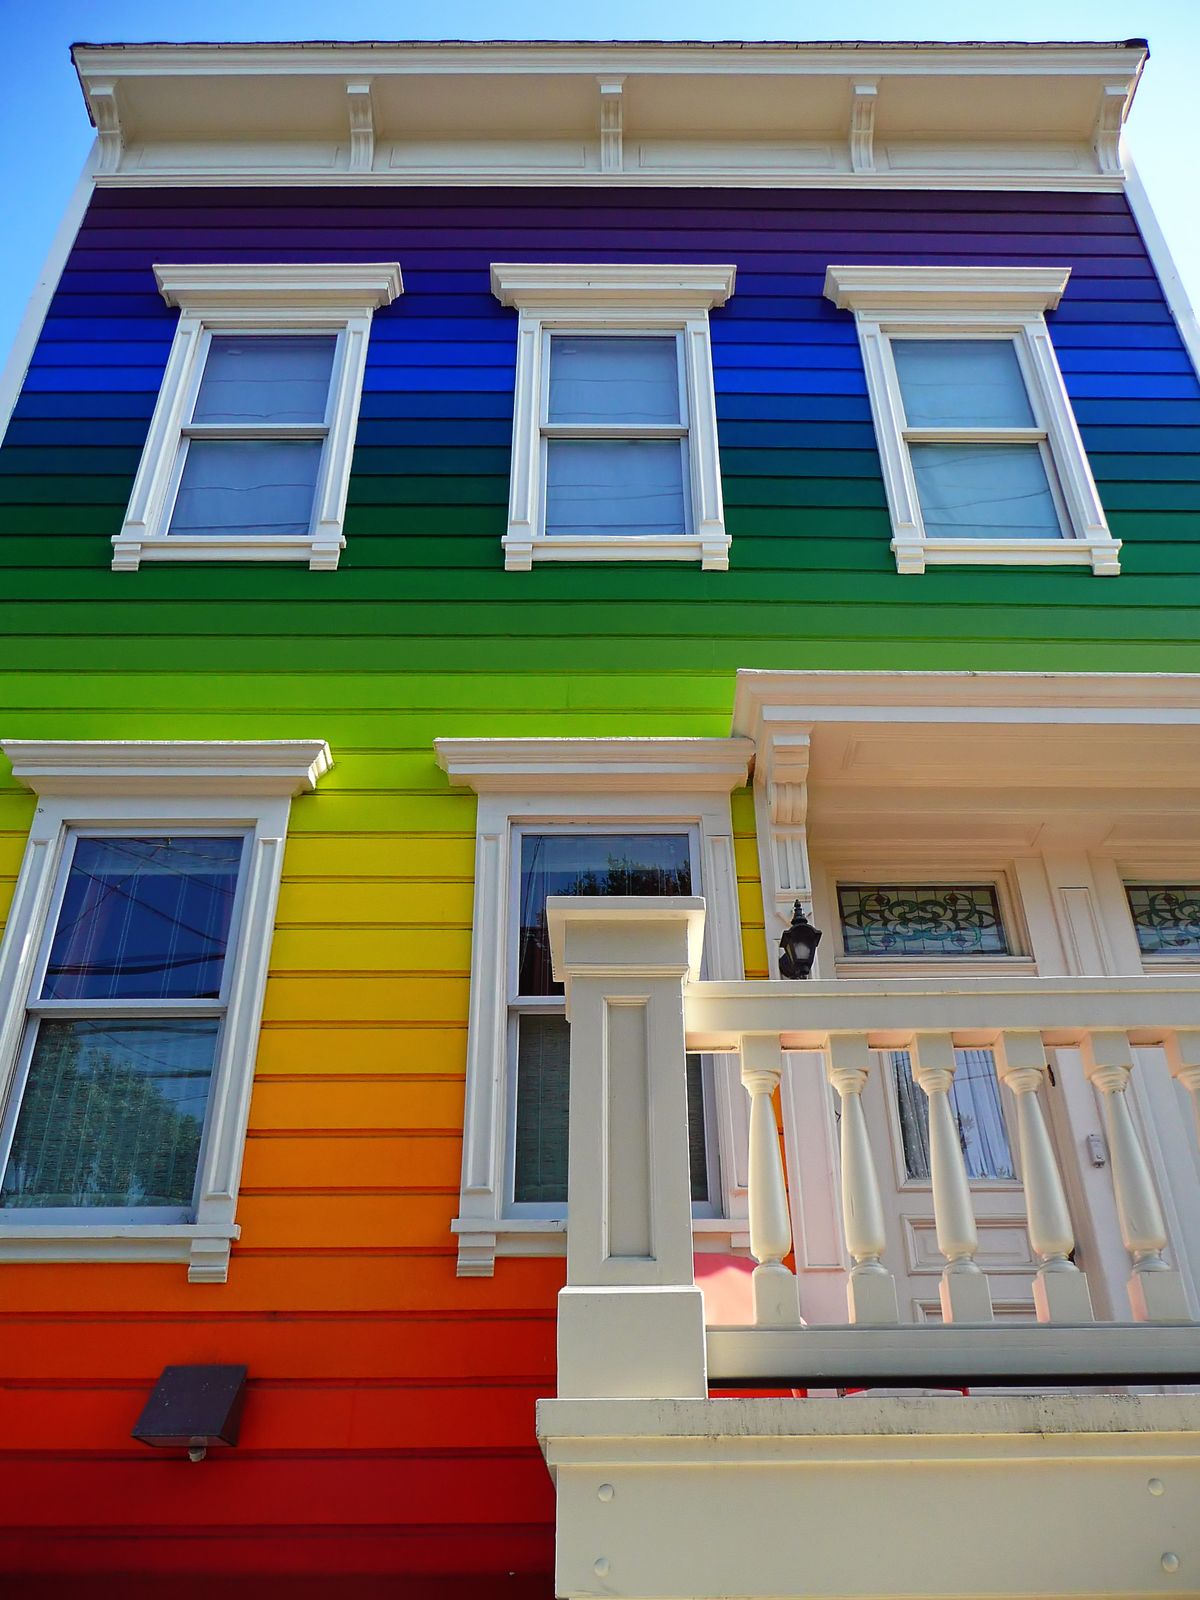 Rainbow House